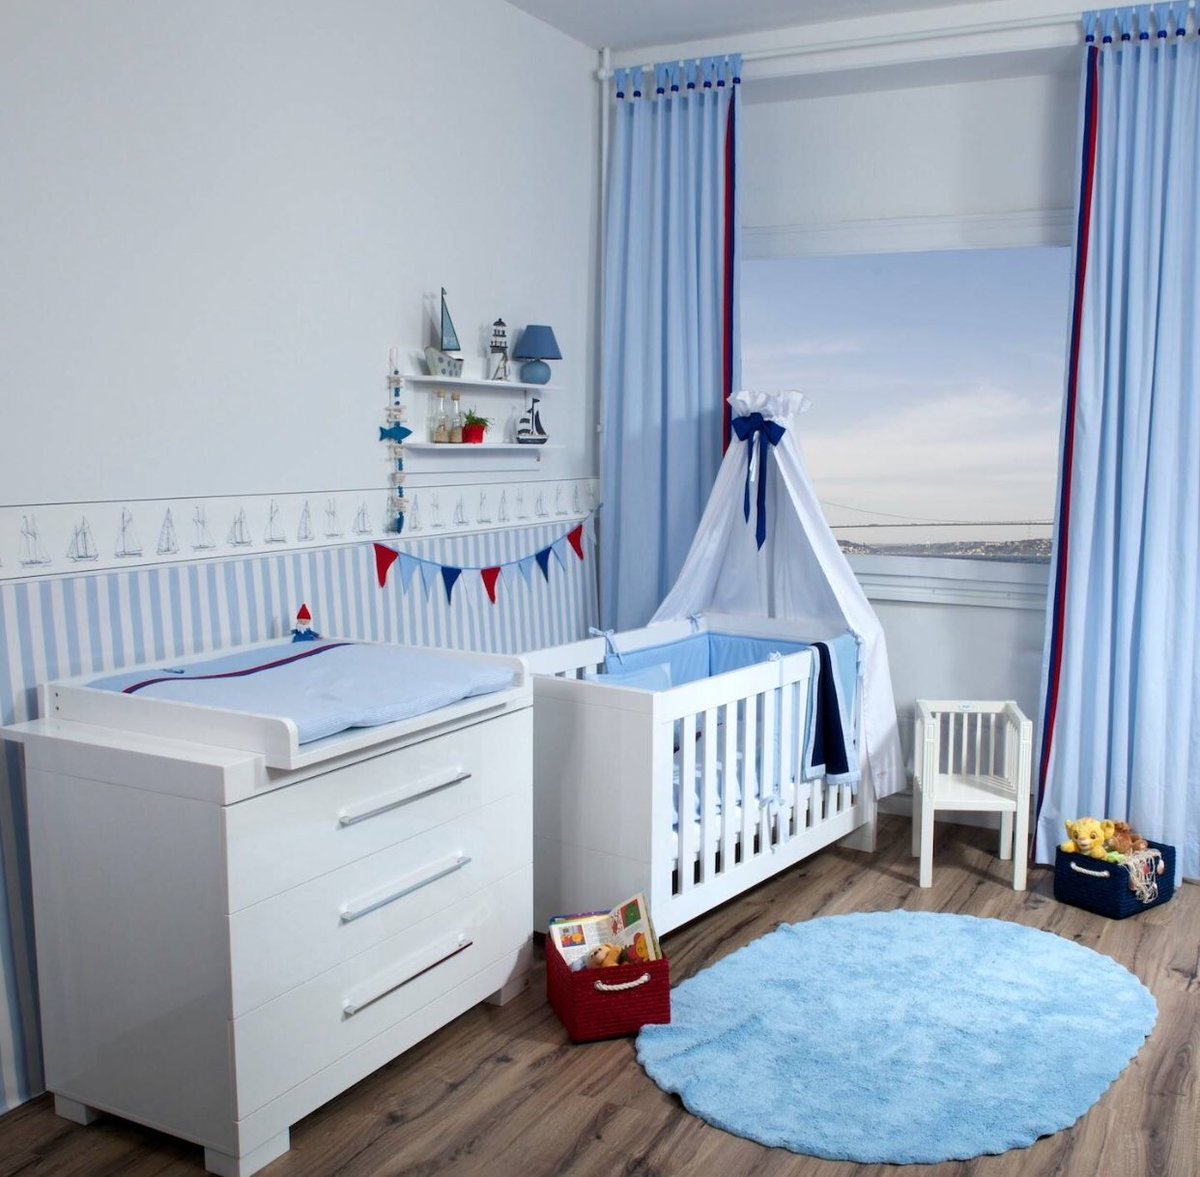 Детская для новорожденного. Комната для новорожденного. Комната для новорожденного мальчика. Детская комната для новорожденных. Интерьер детской комнаты для новорожденного.